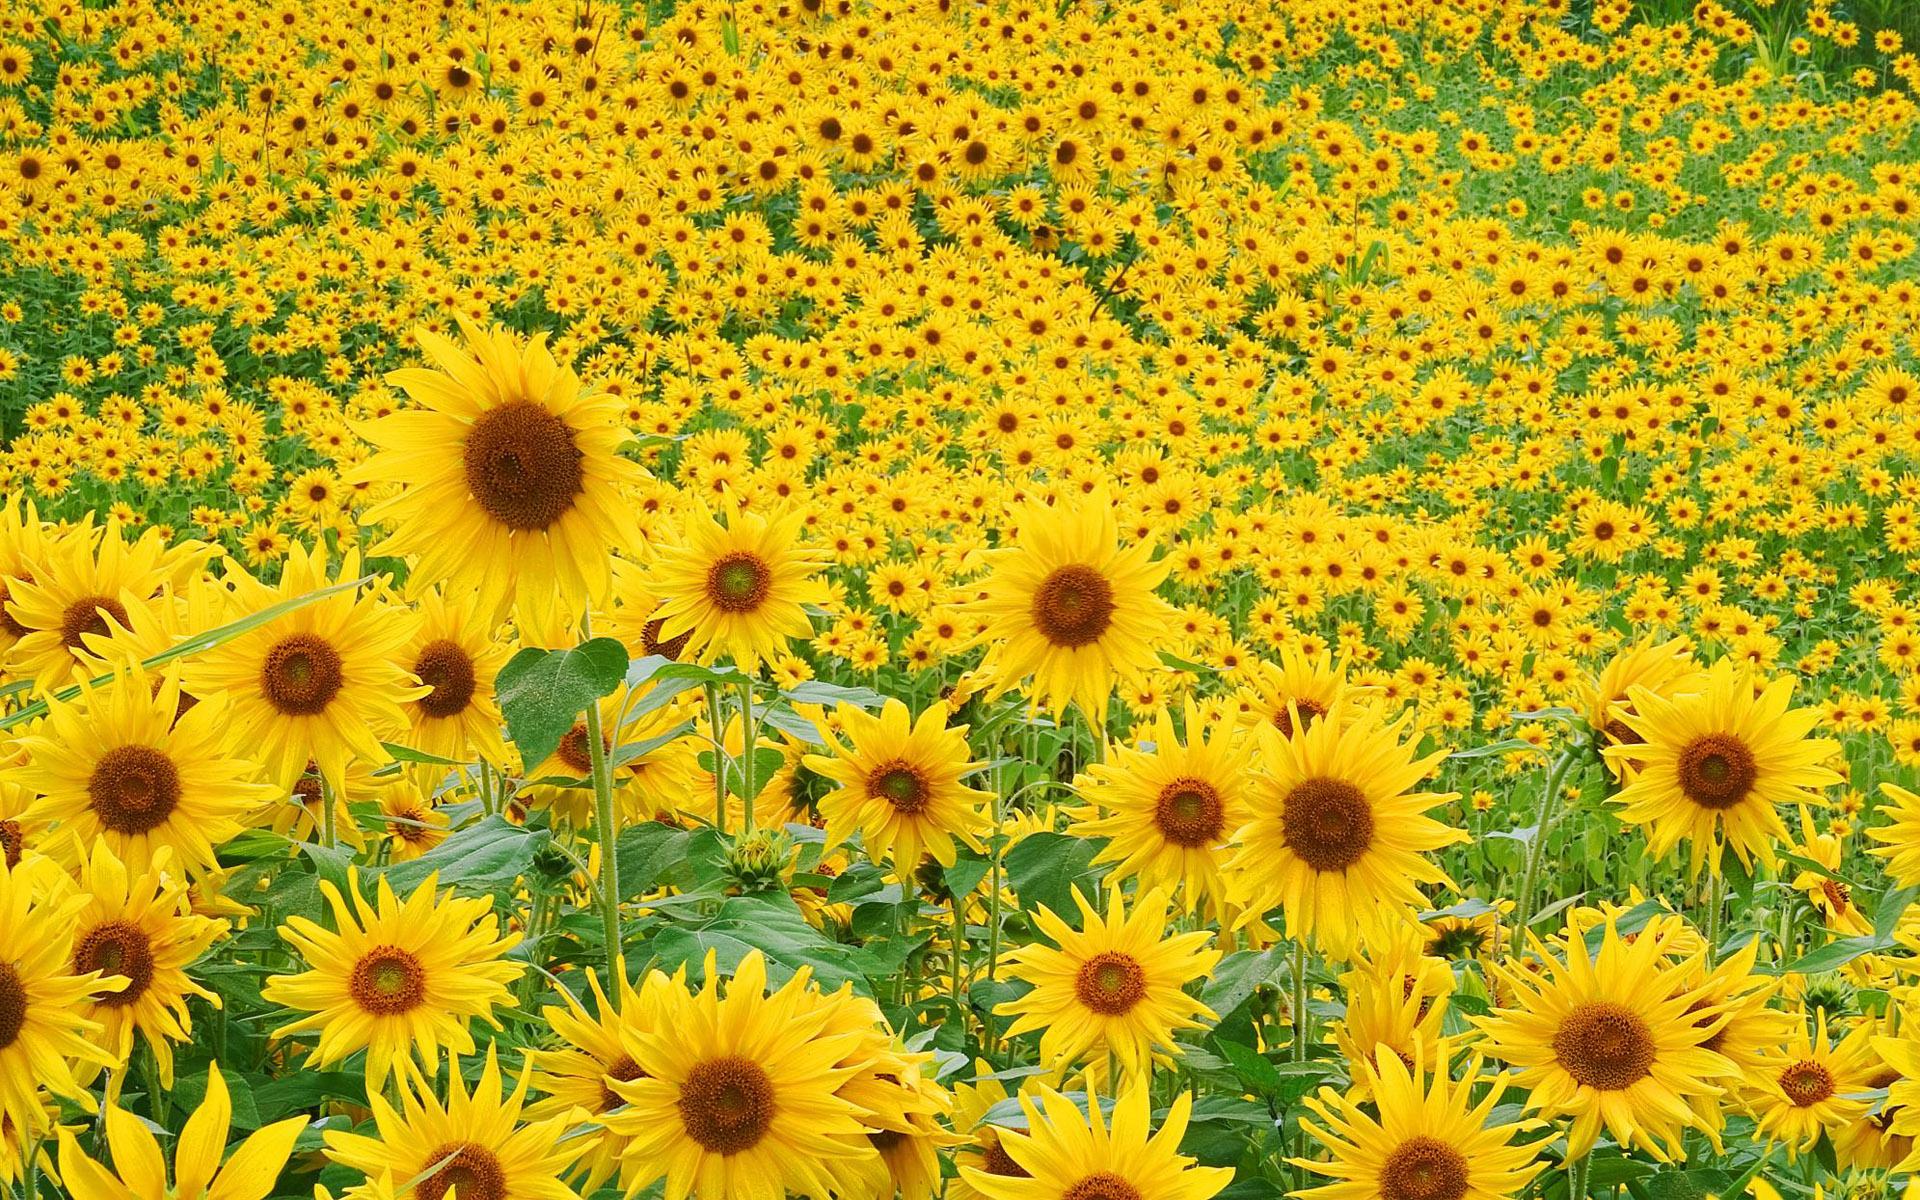 sunflower 4K wallpaper for your desktop or mobile screen free